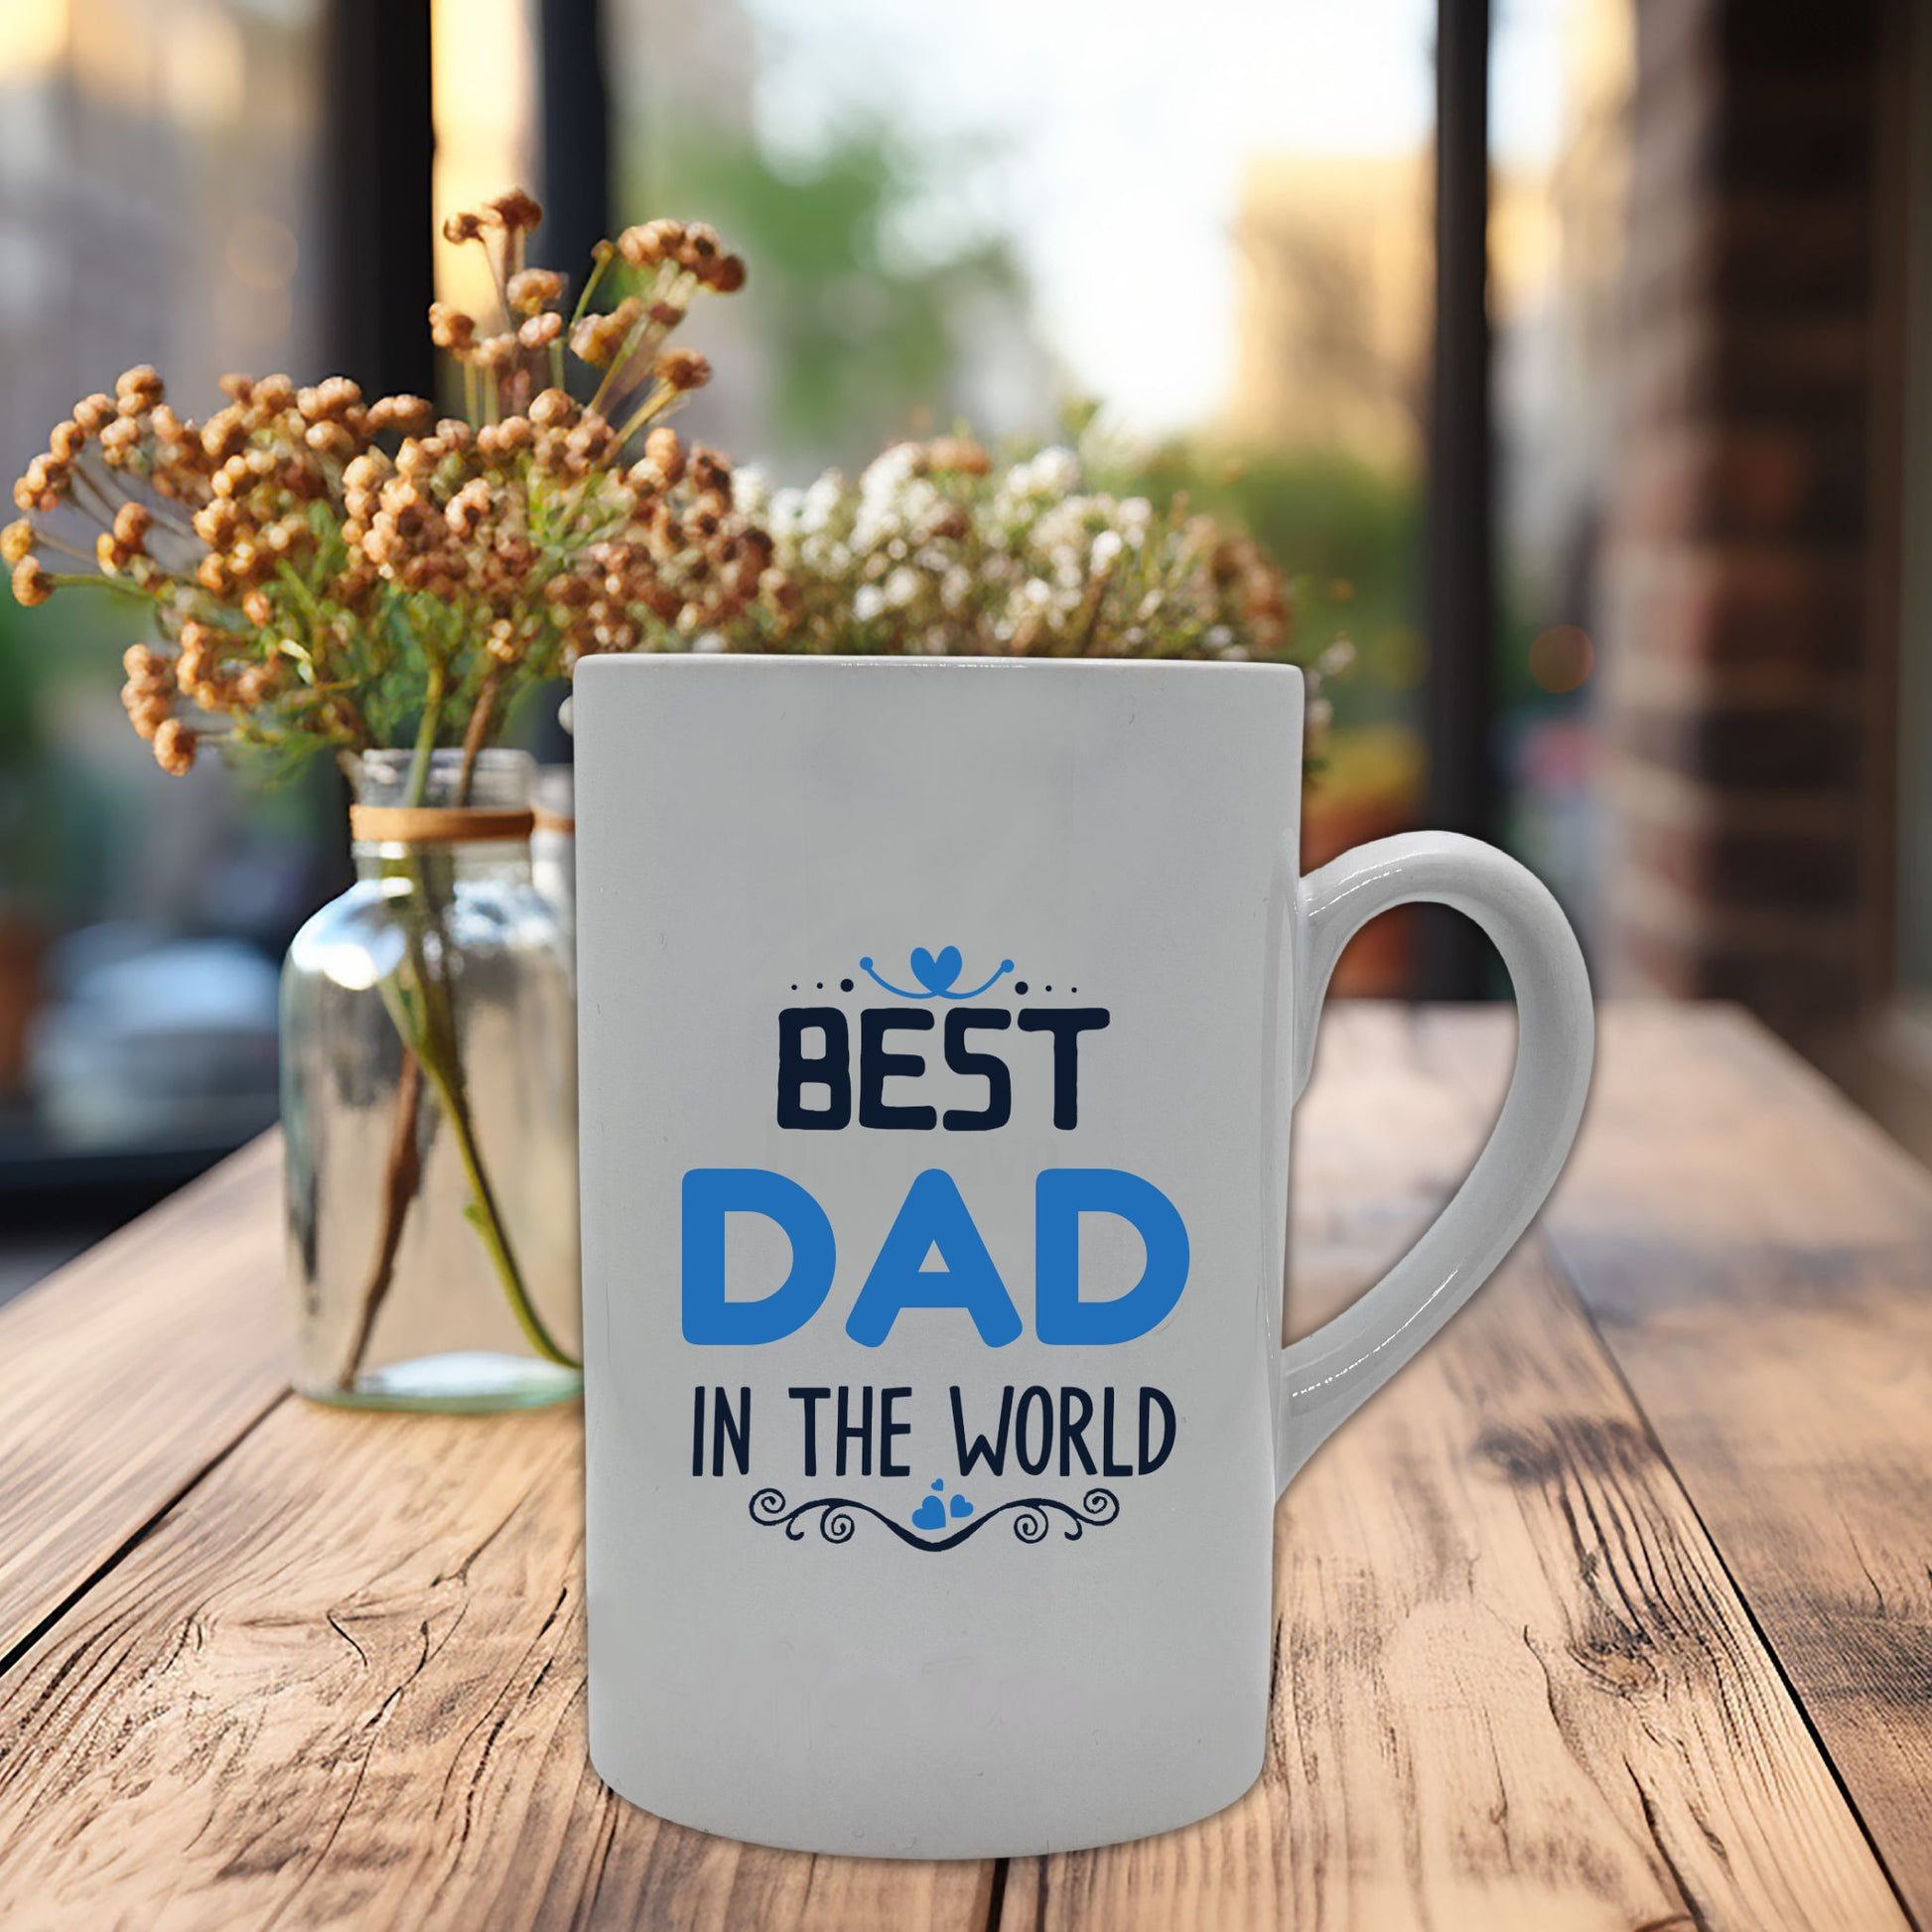 Krus i hvit keramikk med påskrift "Best dad in the world" på en side og tre hjerter på motsatt side. Trykk i lys blå og sort.